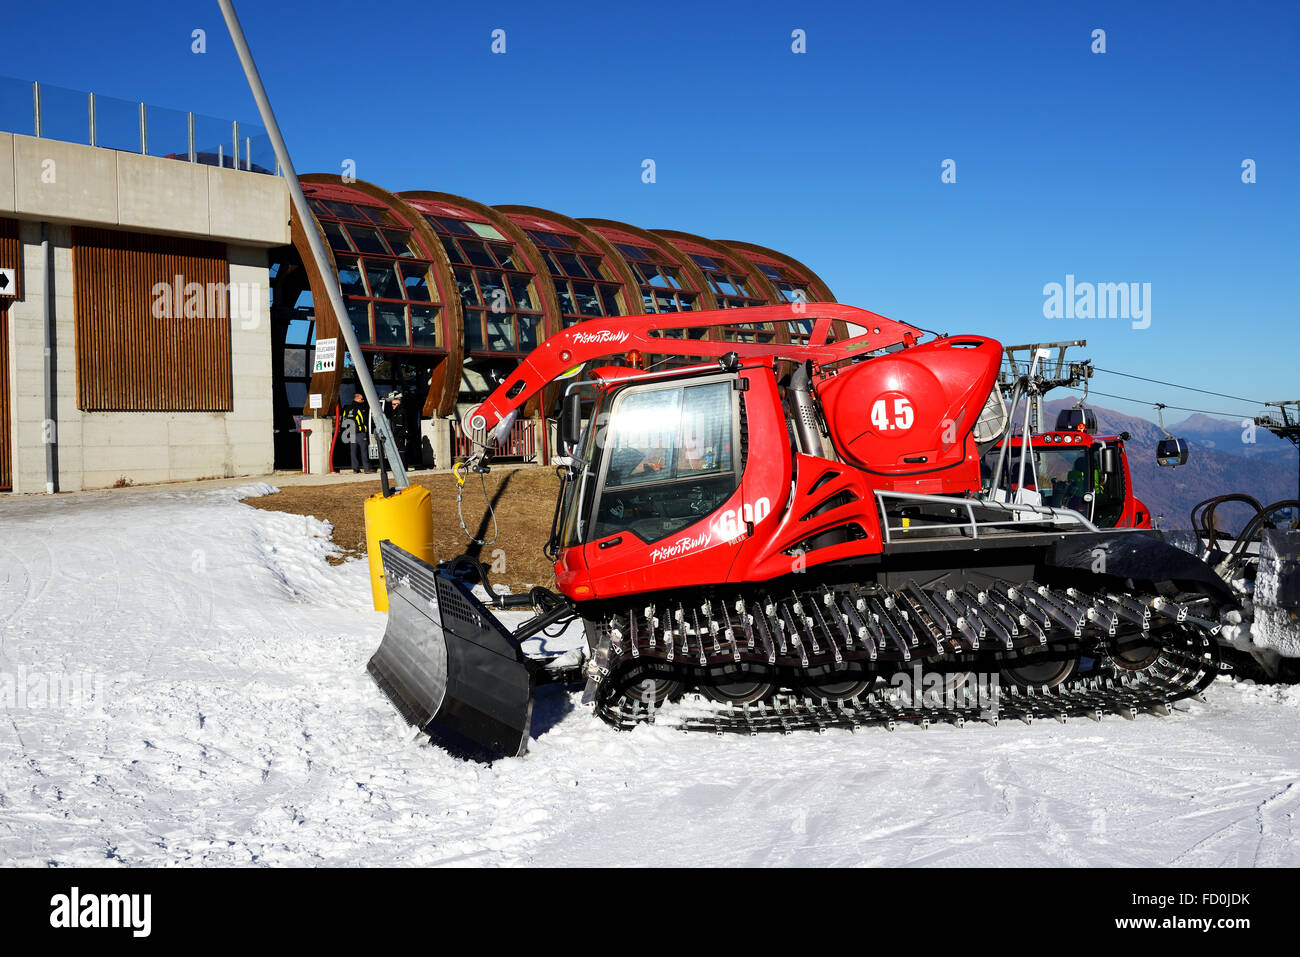 La Pisten Bully 600 afeitadora para preparación de pistas de esquí, Madonna di Campiglio, Italia Foto de stock